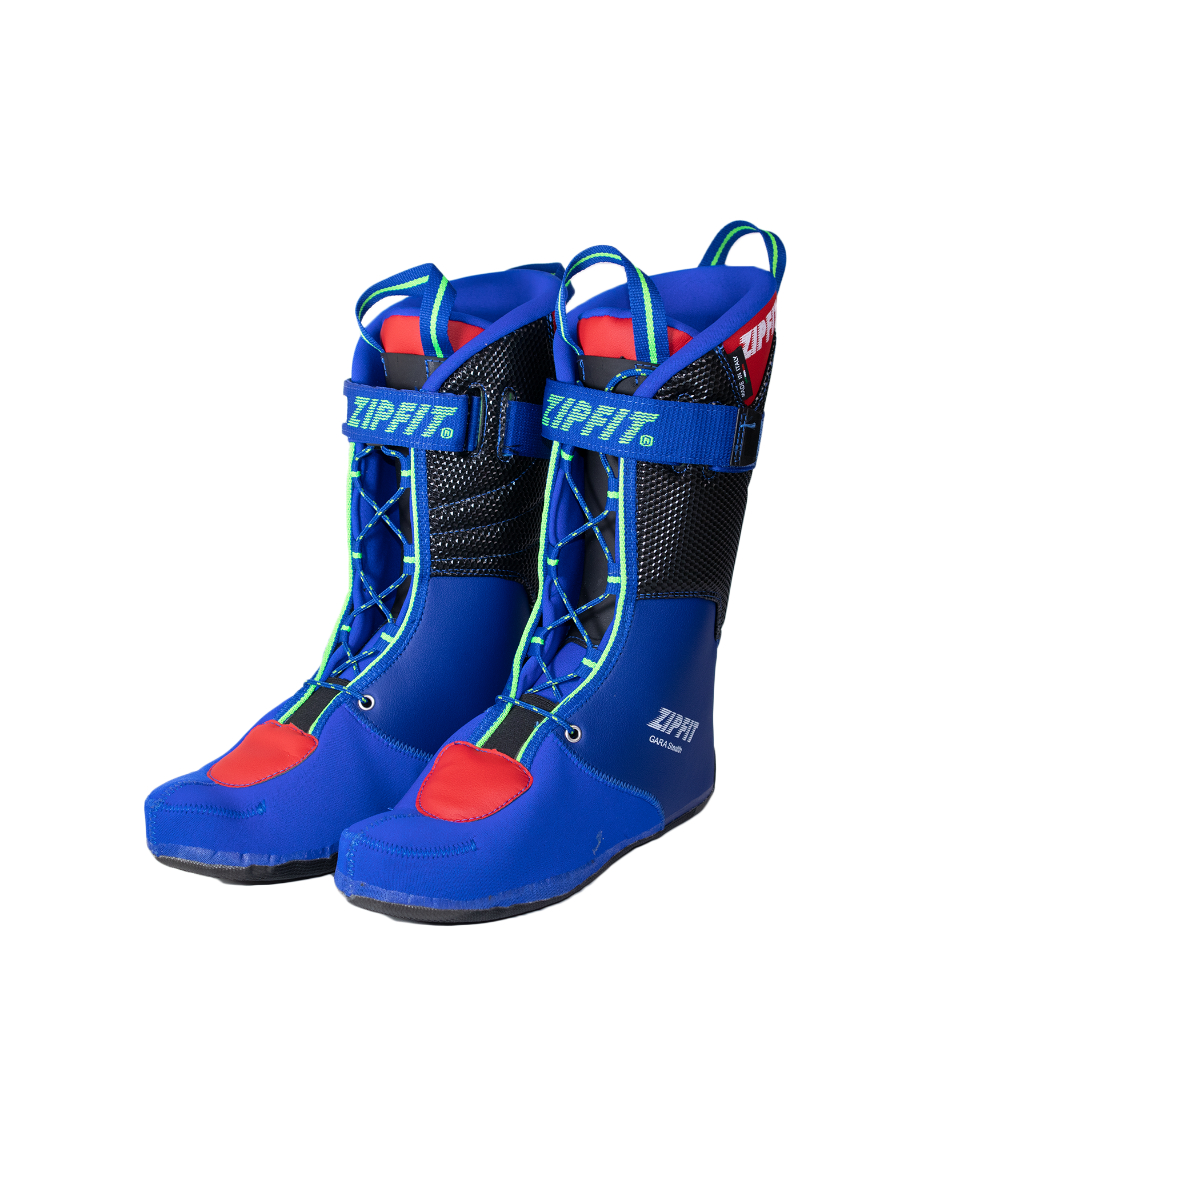 Gara LV - ZipFit - Ski Boot Liners